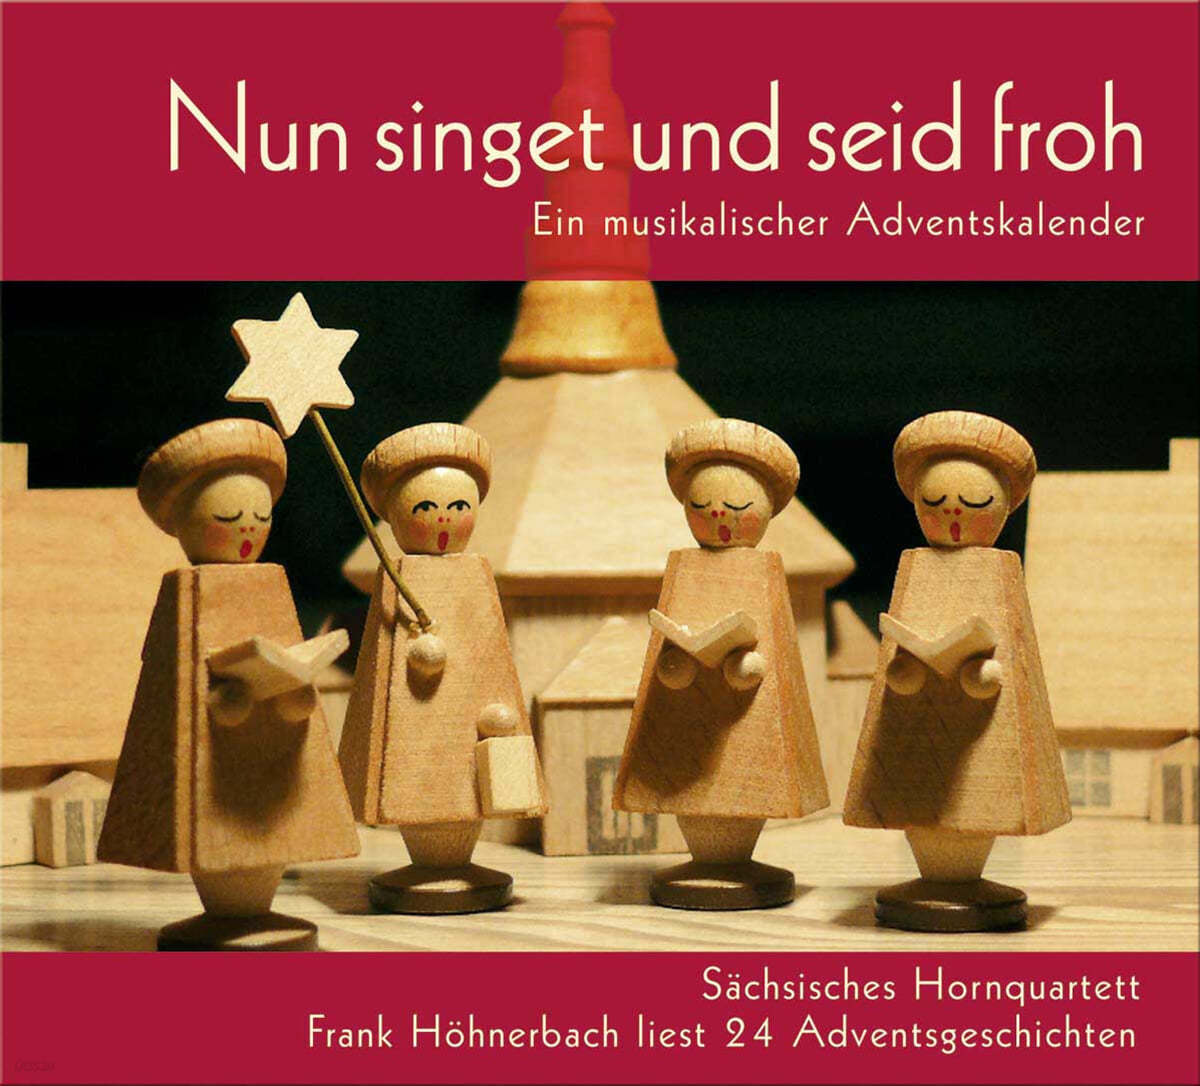 Sachsische Hornquartett 작센 호른사중주단의 크리스마스 캐럴집 - 노래하며 기뻐하라 (Nun singet und seid froh - Ein Musikalischer Adventskalender)